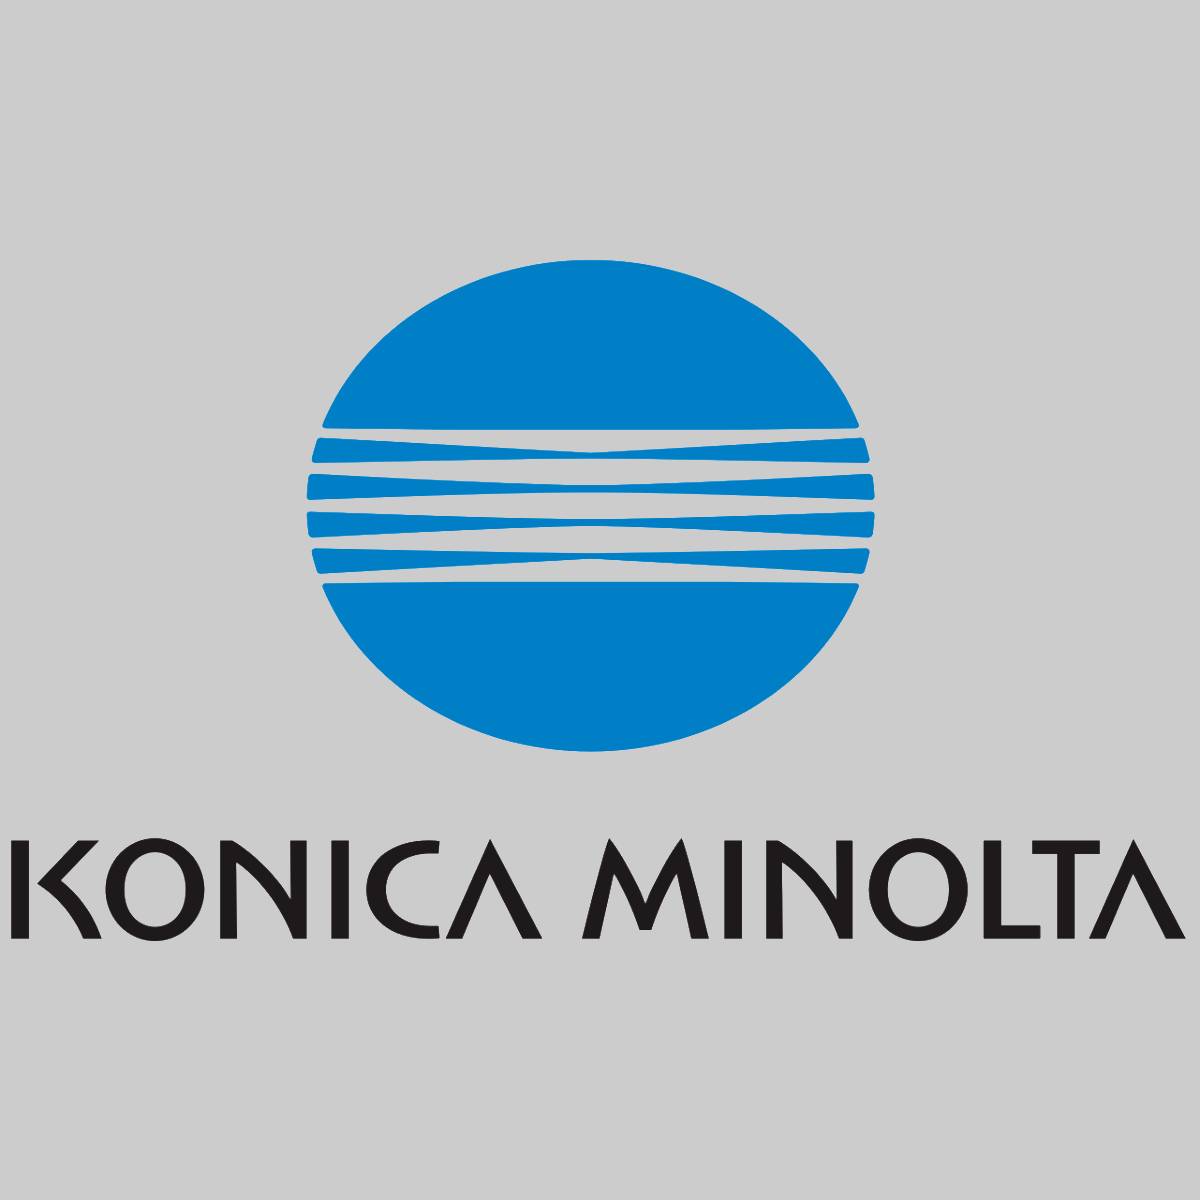 "Originální spodní přenosový válec Konica Minolta A50U520001 Bizhub Press C1060